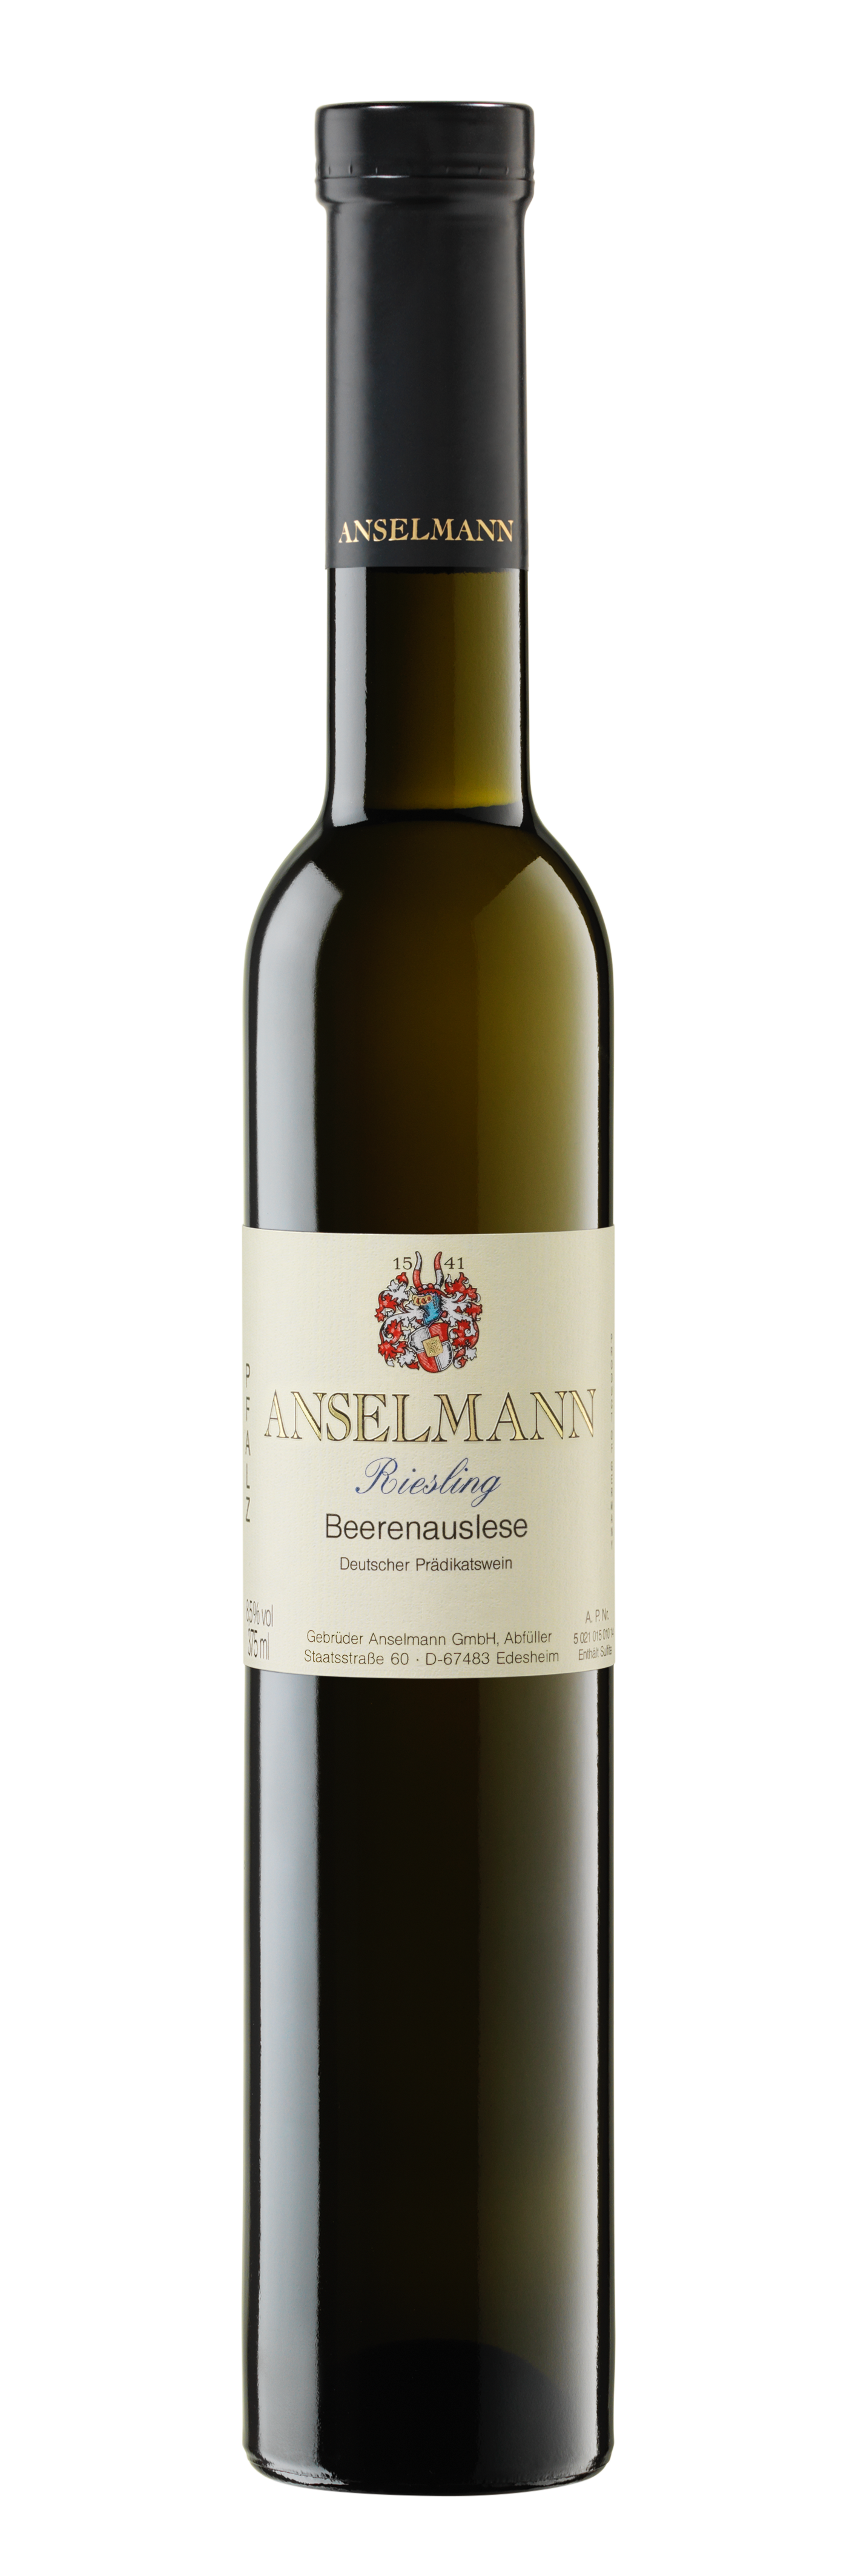 2017 Riesling Beerenauslese 0,375 L edelsüss - Weingut Anselmann